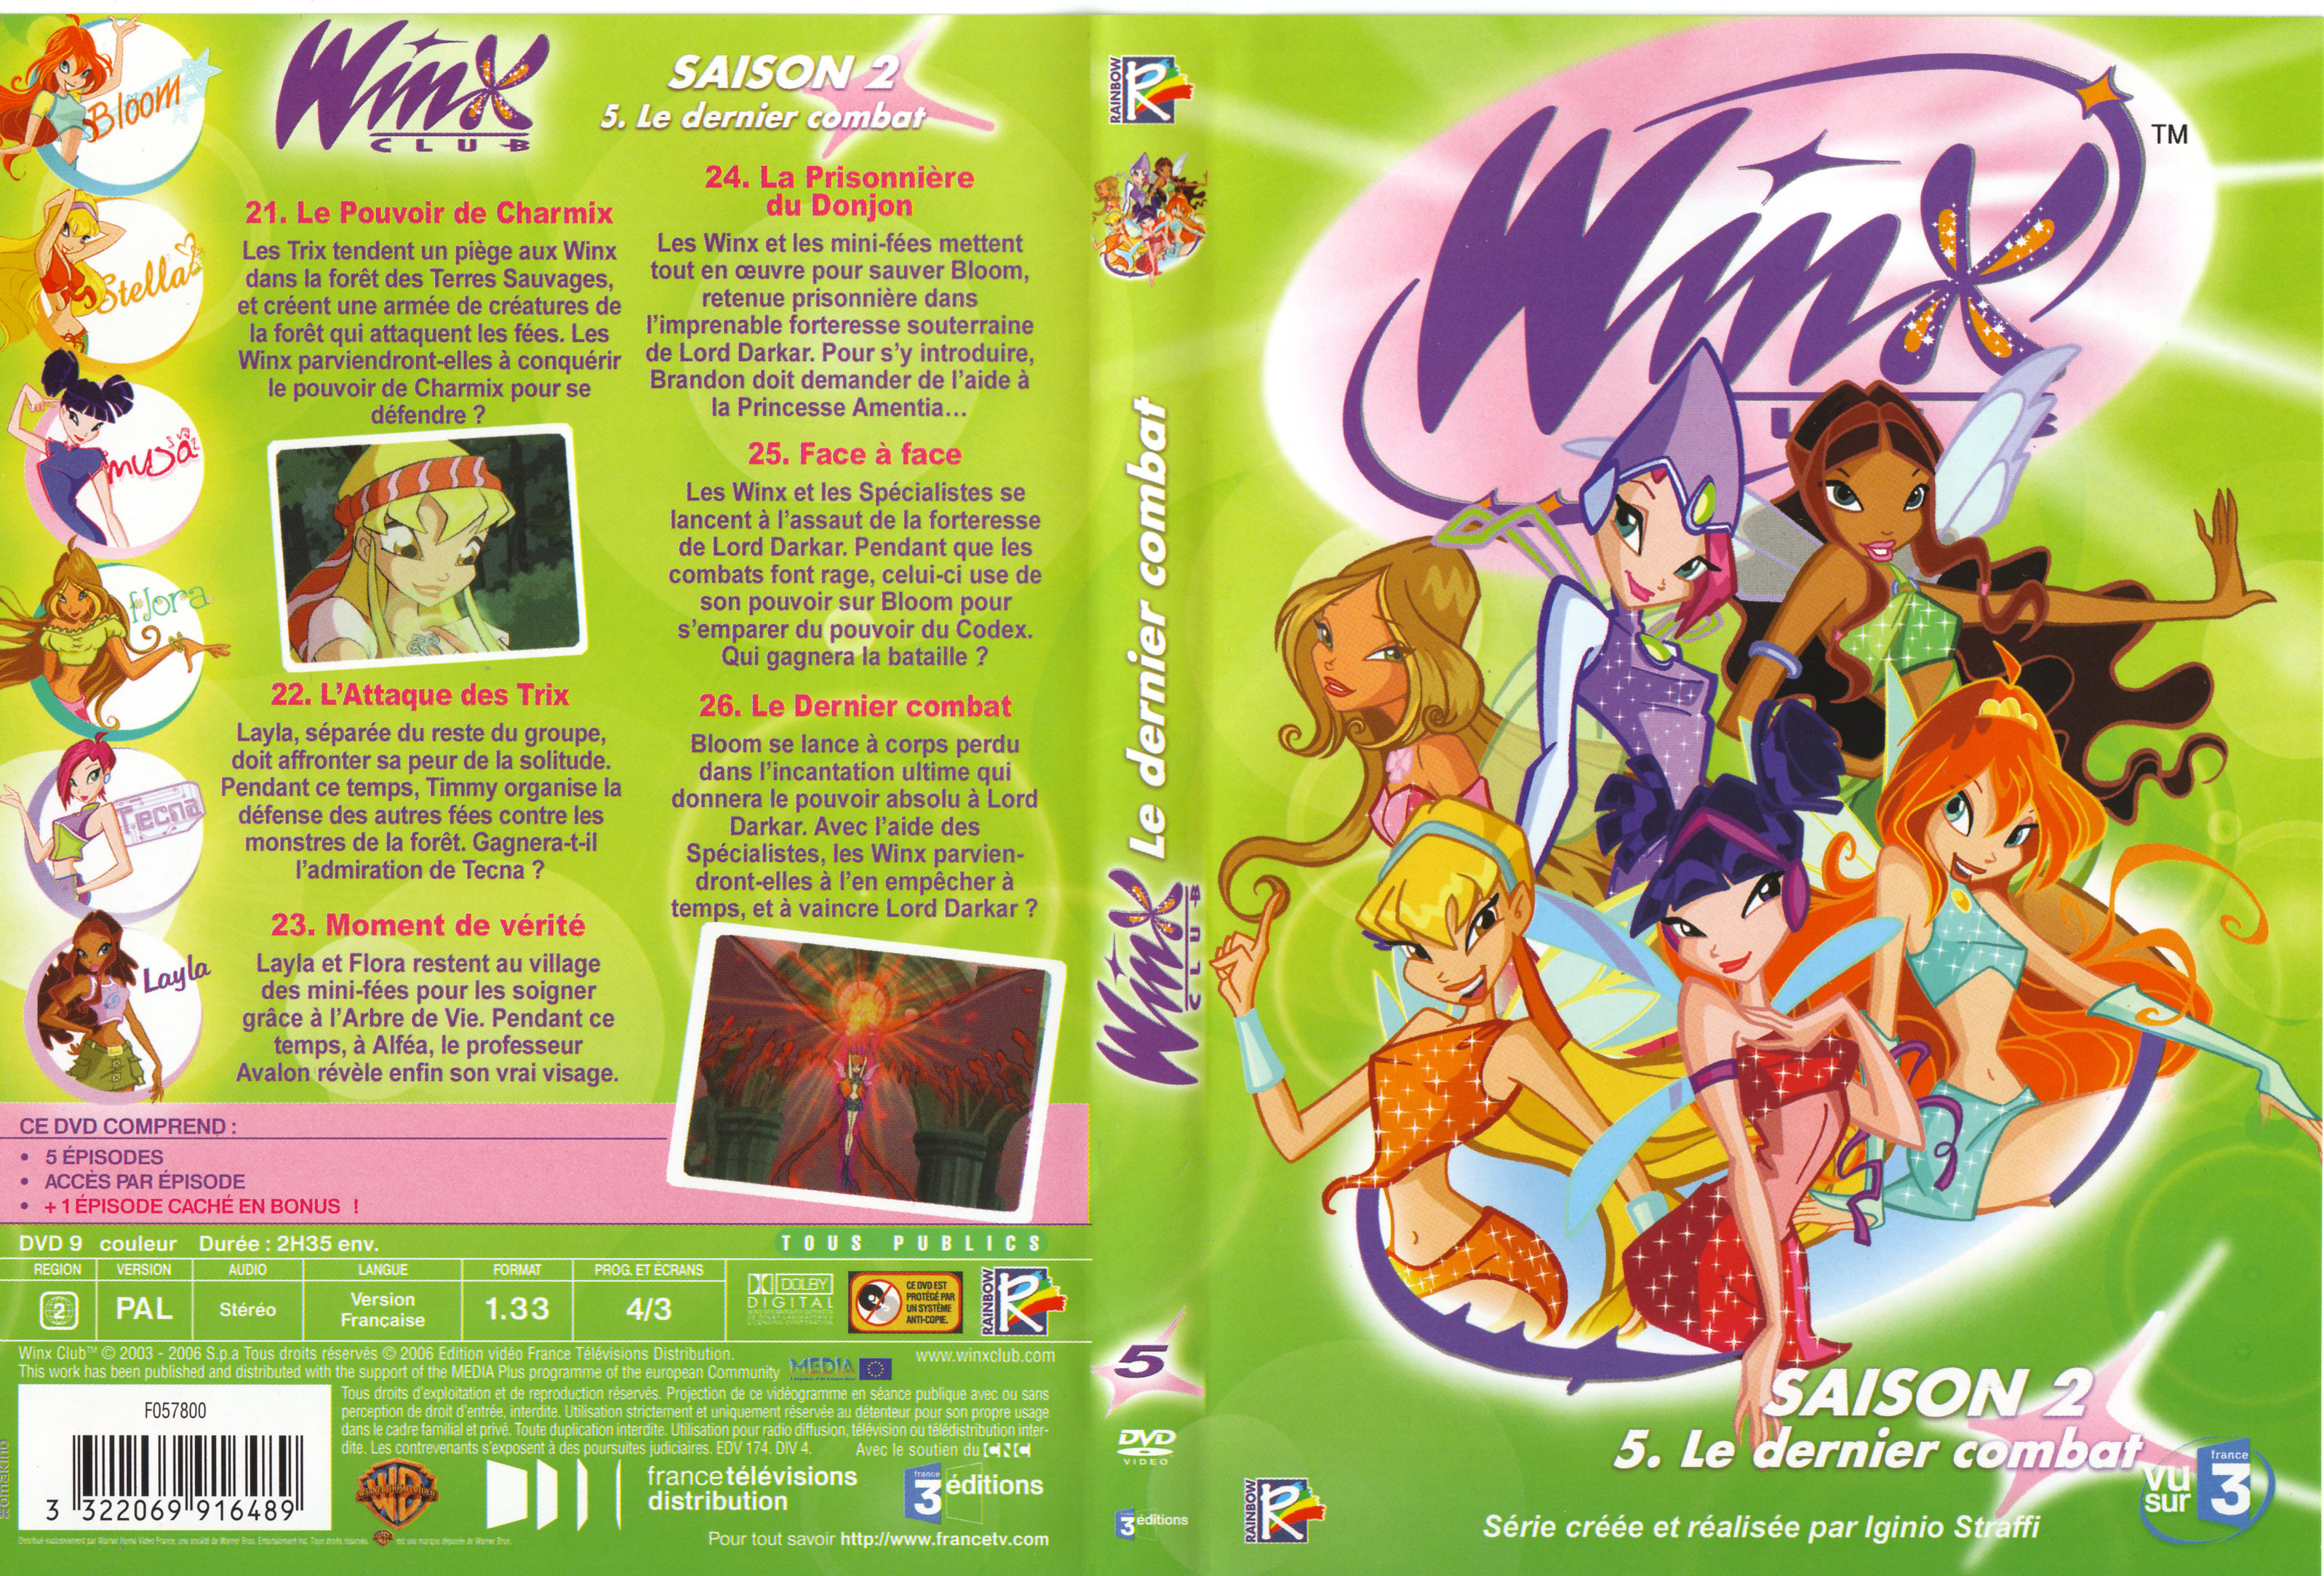 Jaquette DVD Winx Saison 2 vol 5